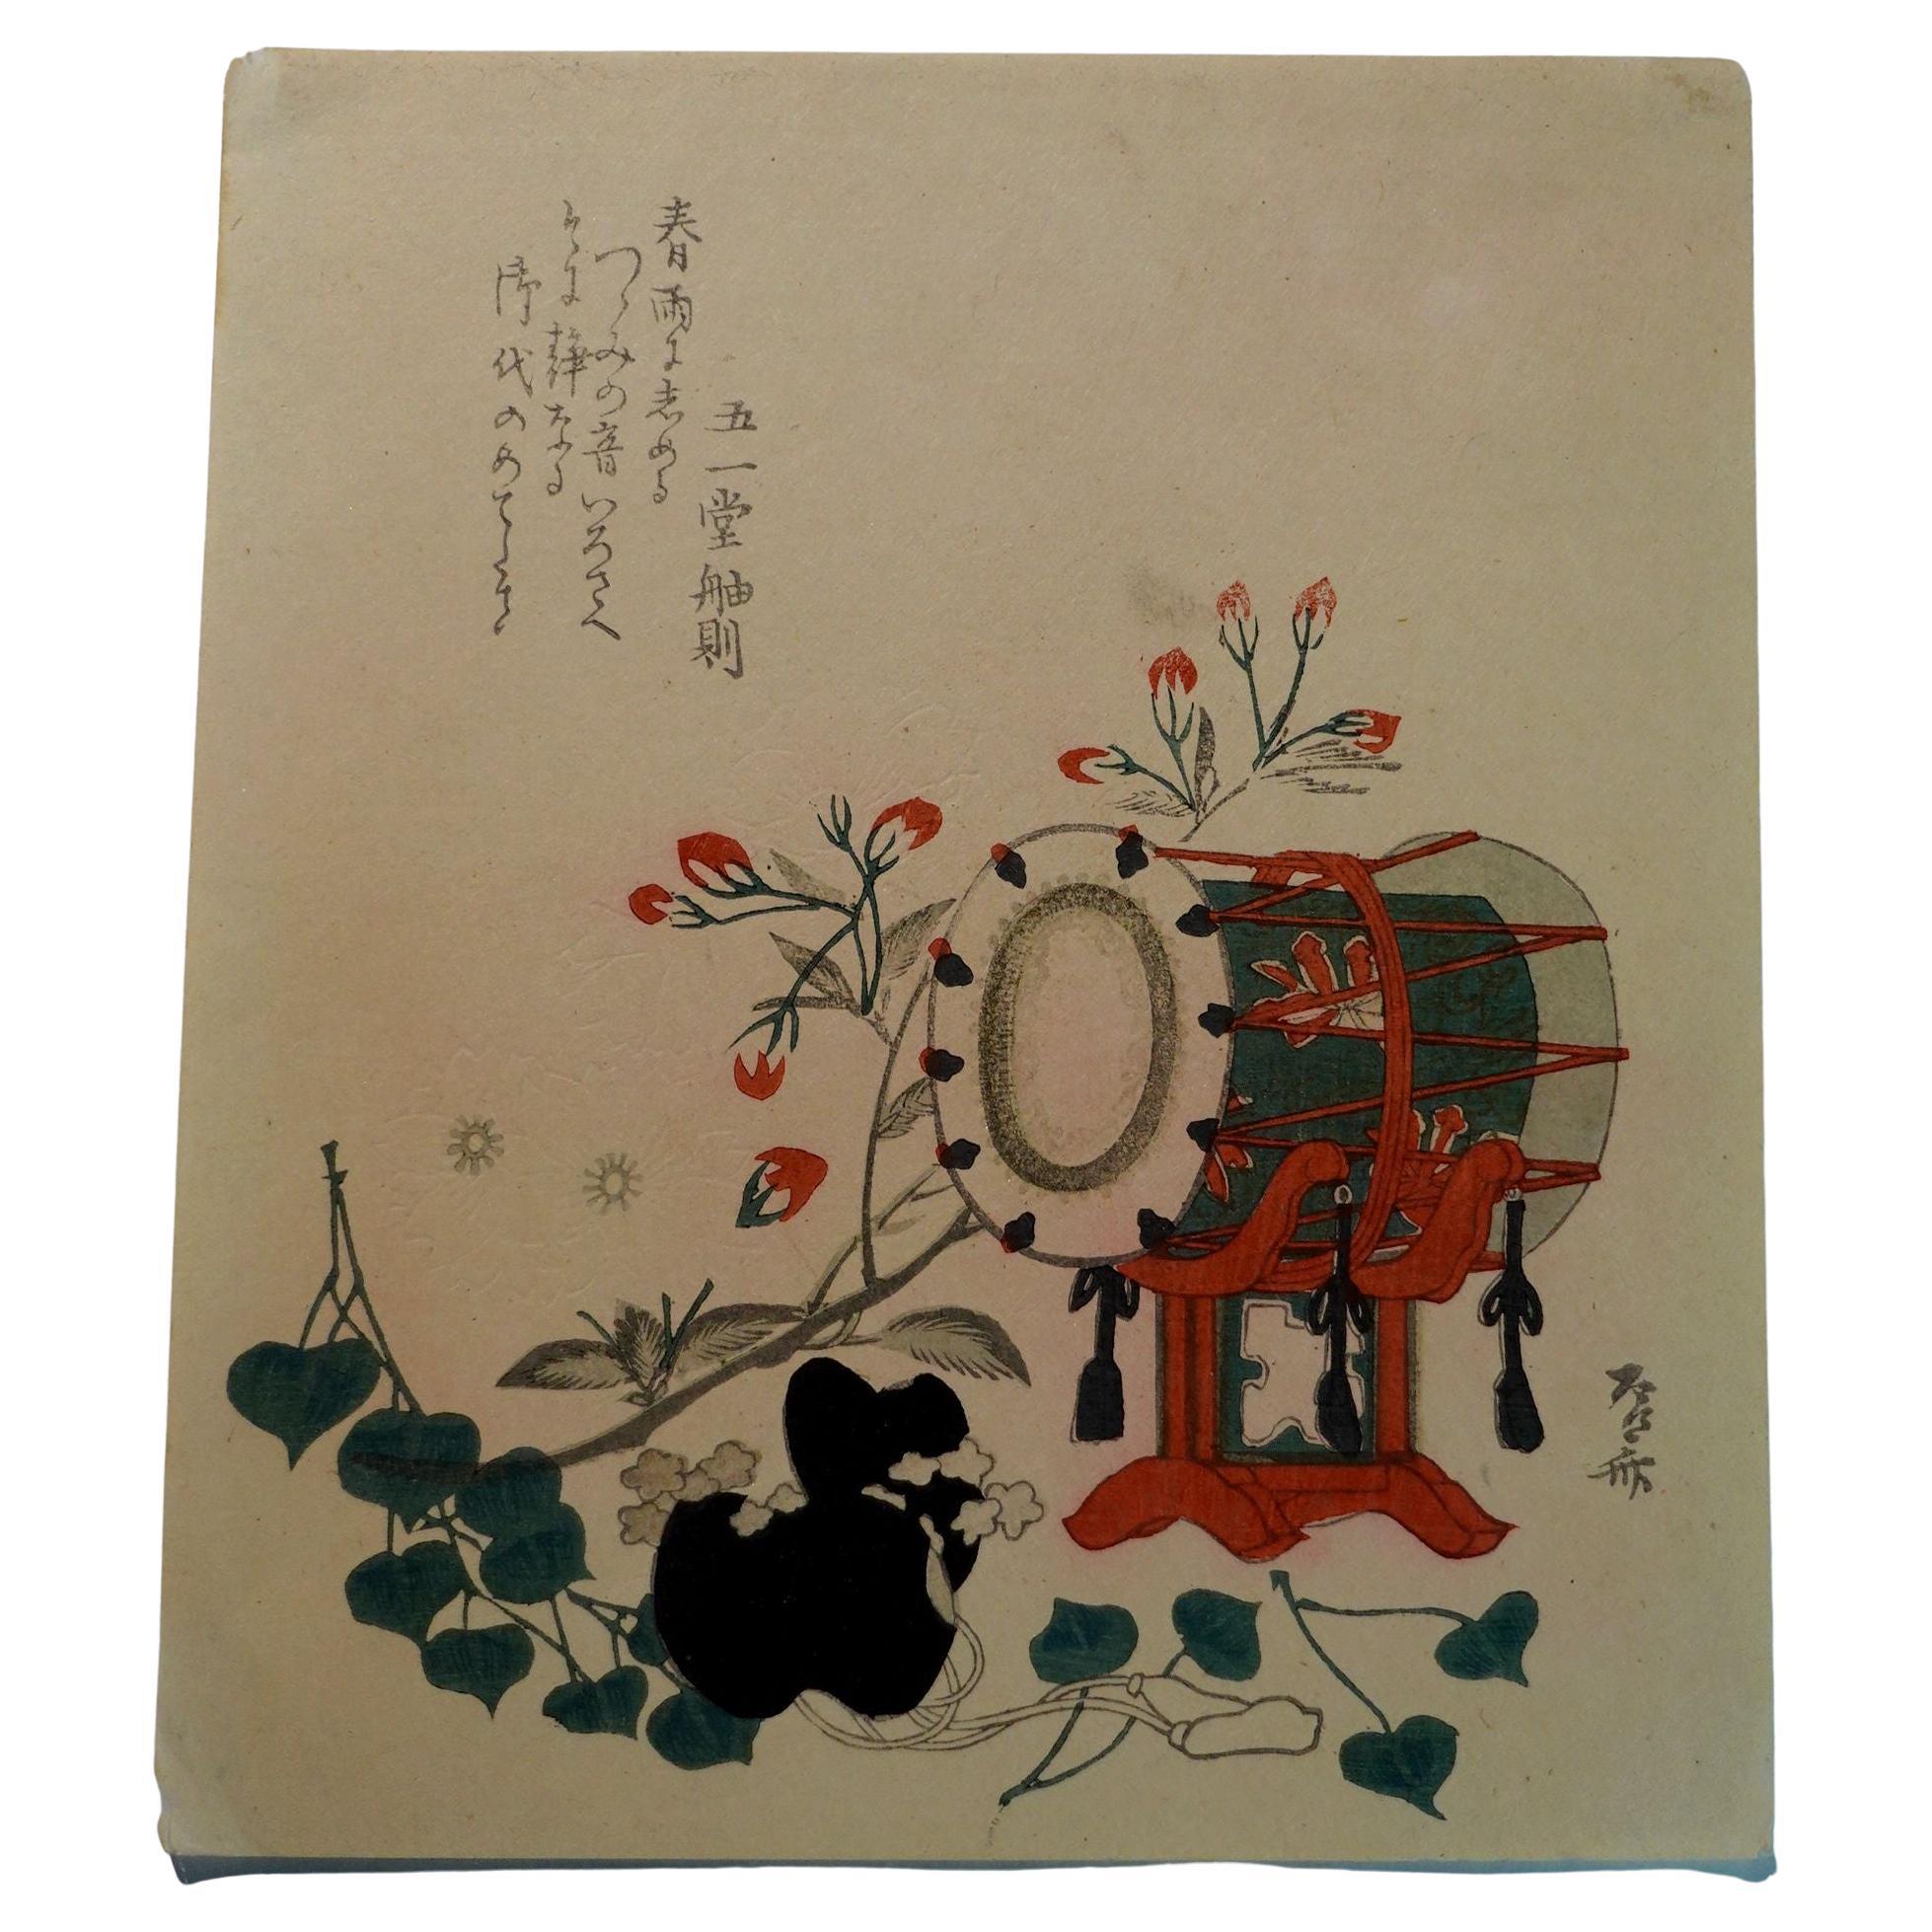 Japanese Woodblock Print by Hokusai Katsushika, 葛飾北齋 '1760~1849' For Sale